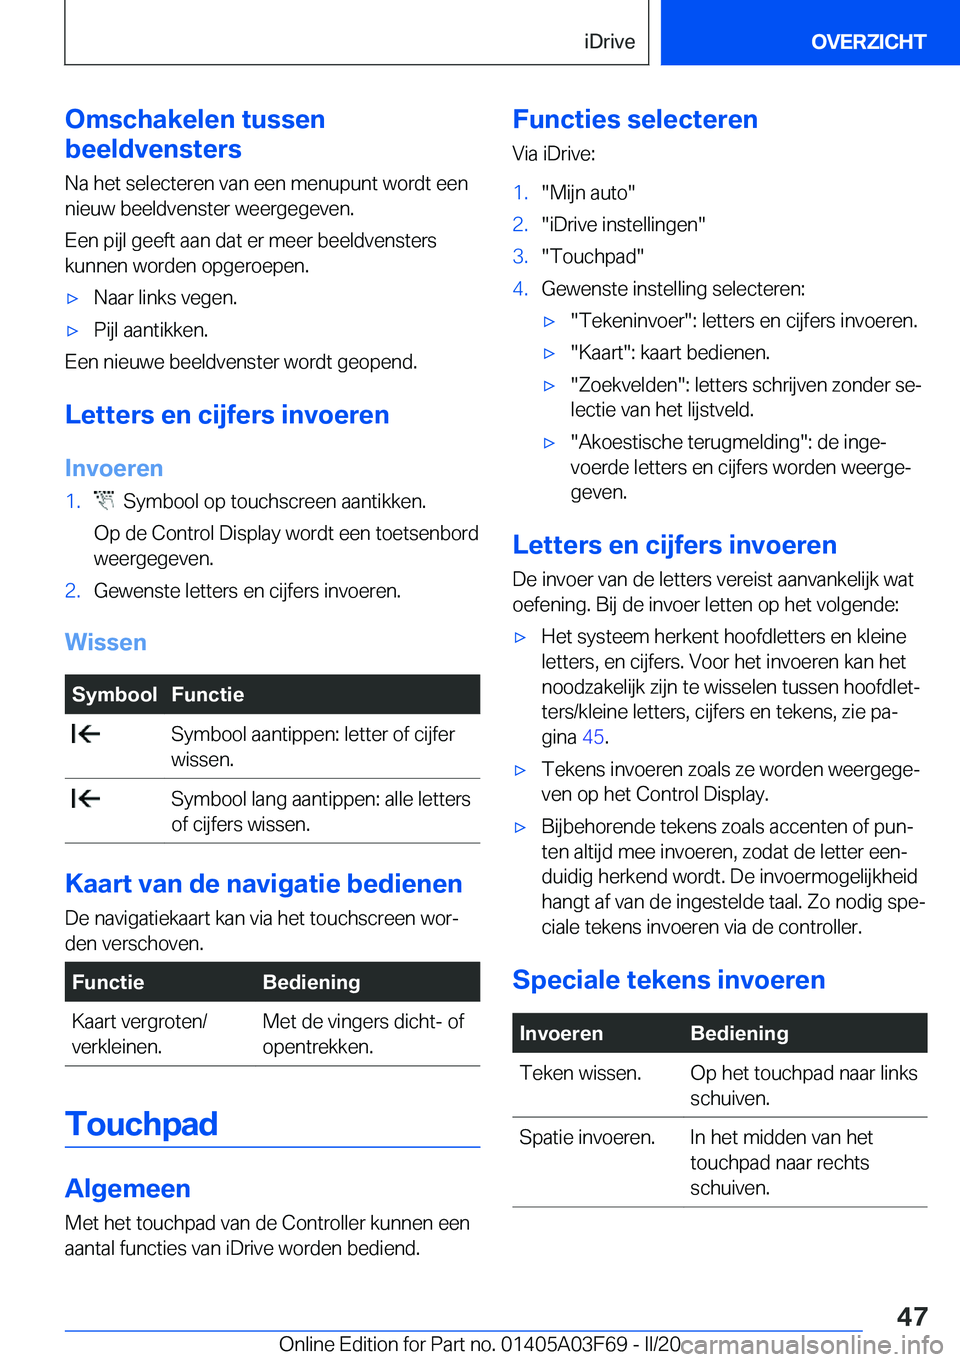 BMW 3 SERIES 2020  Instructieboekjes (in Dutch) �O�m�s�c�h�a�k�e�l�e�n��t�u�s�s�e�n
�b�e�e�l�d�v�e�n�s�t�e�r�s
�N�a��h�e�t��s�e�l�e�c�t�e�r�e�n��v�a�n��e�e�n��m�e�n�u�p�u�n�t��w�o�r�d�t��e�e�n
�n�i�e�u�w��b�e�e�l�d�v�e�n�s�t�e�r��w�e�e�r�